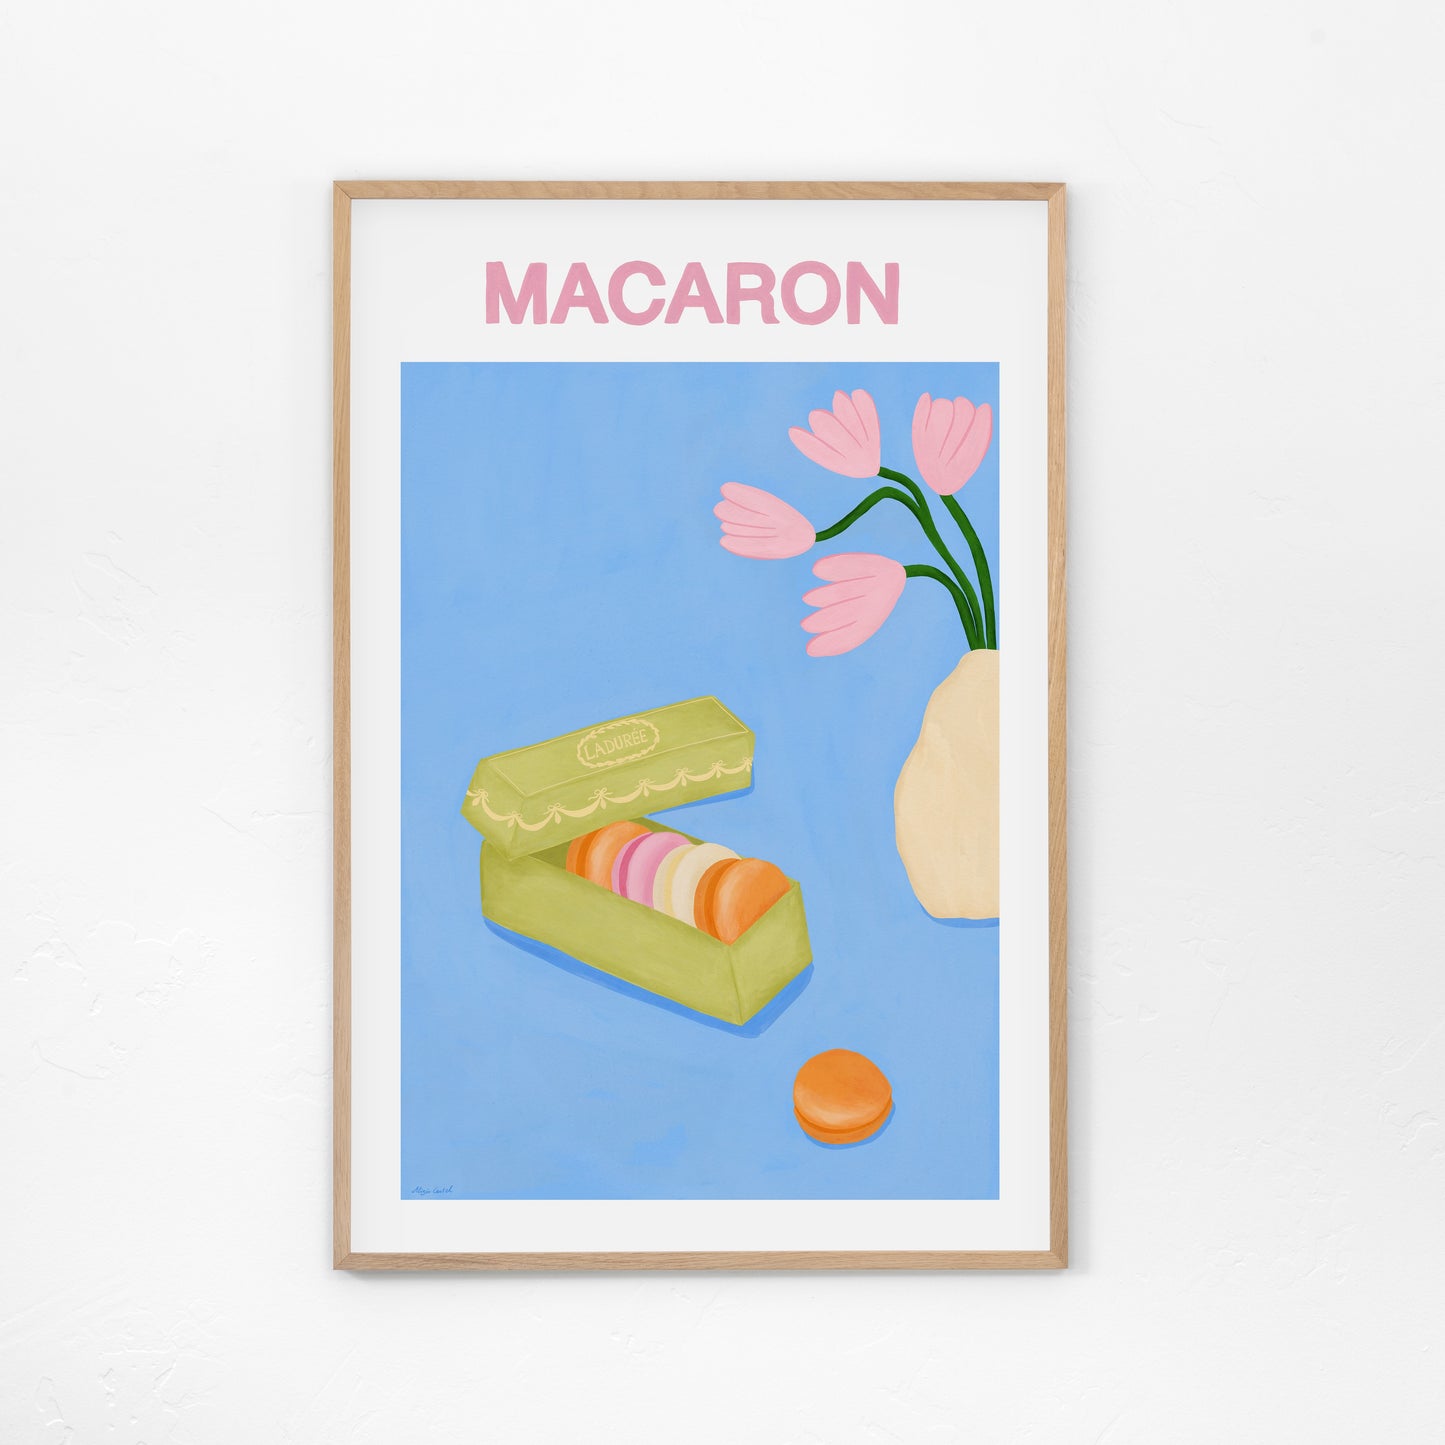 Macaron